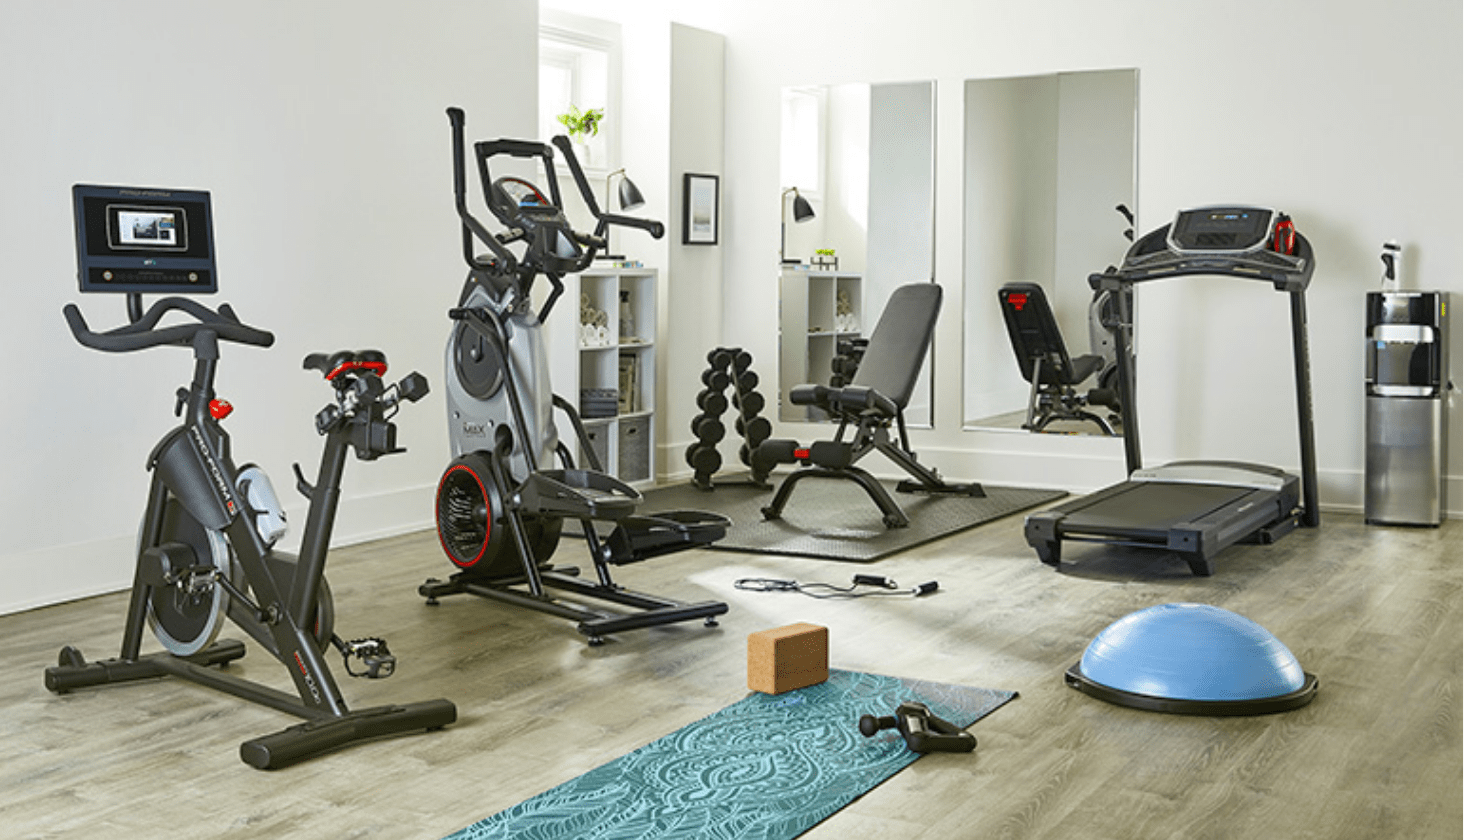 Exerciseur elliptique, banc de musculation, vélo stationnaire et poids dans un coin spacieux